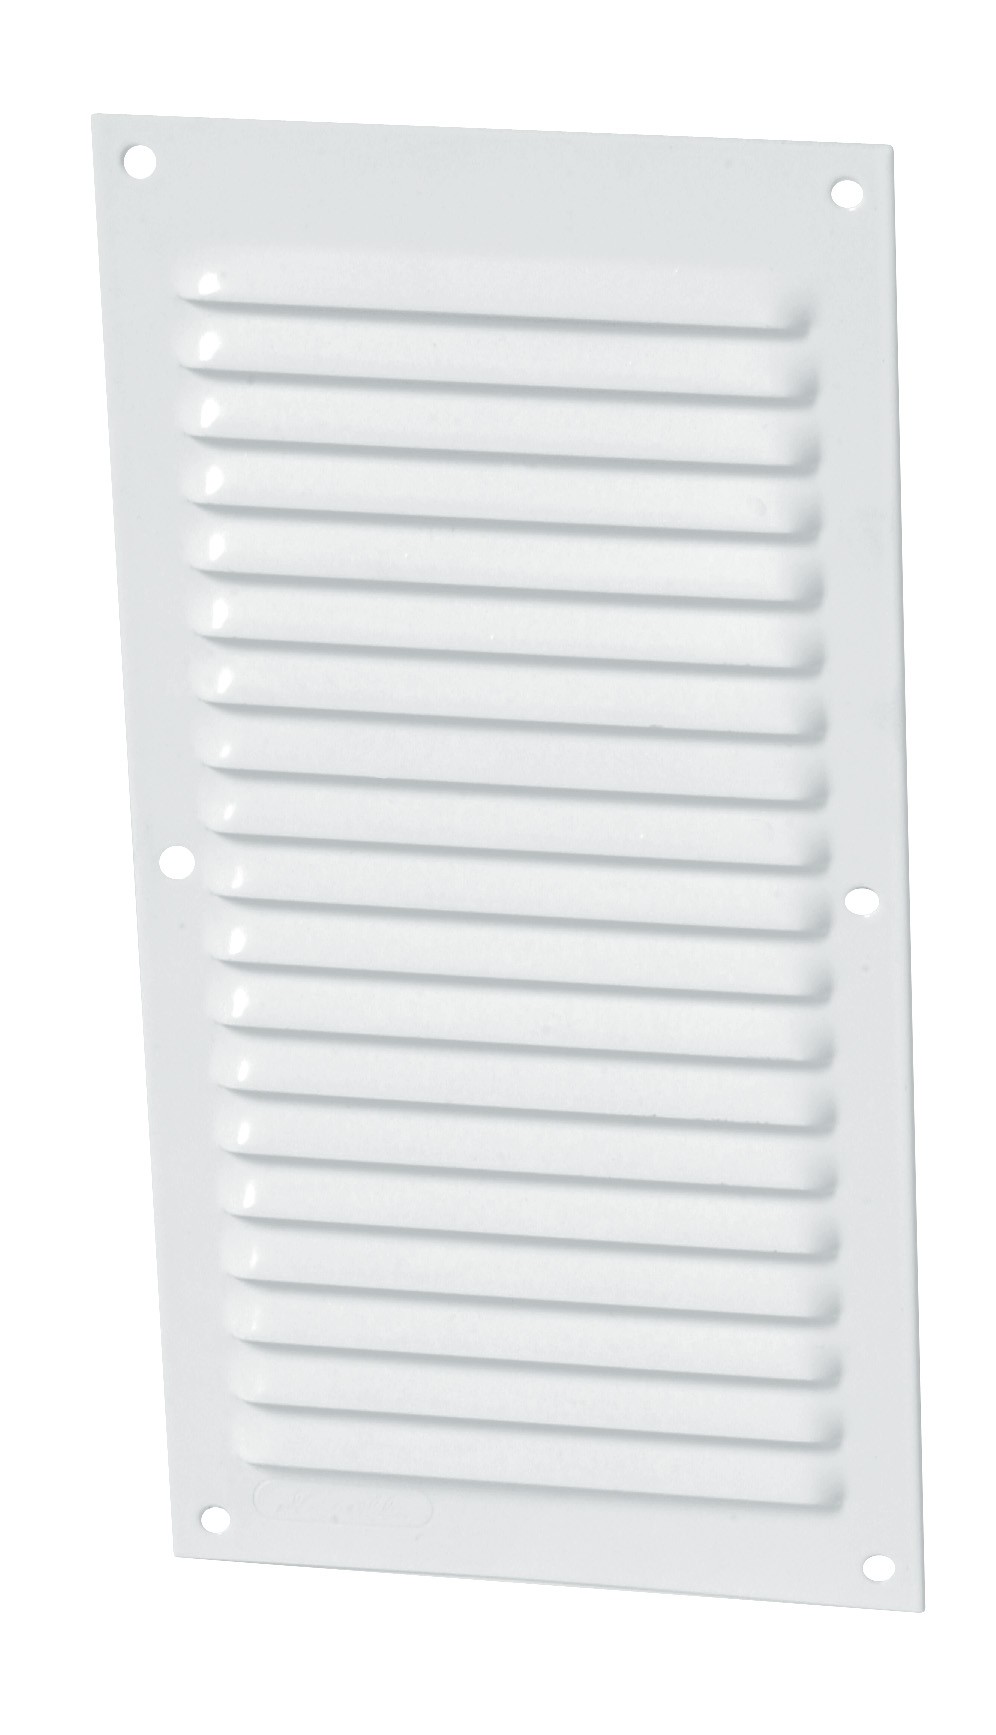 Aluminio lacado blanco con mosquitera: Rectangular vertical 30x15